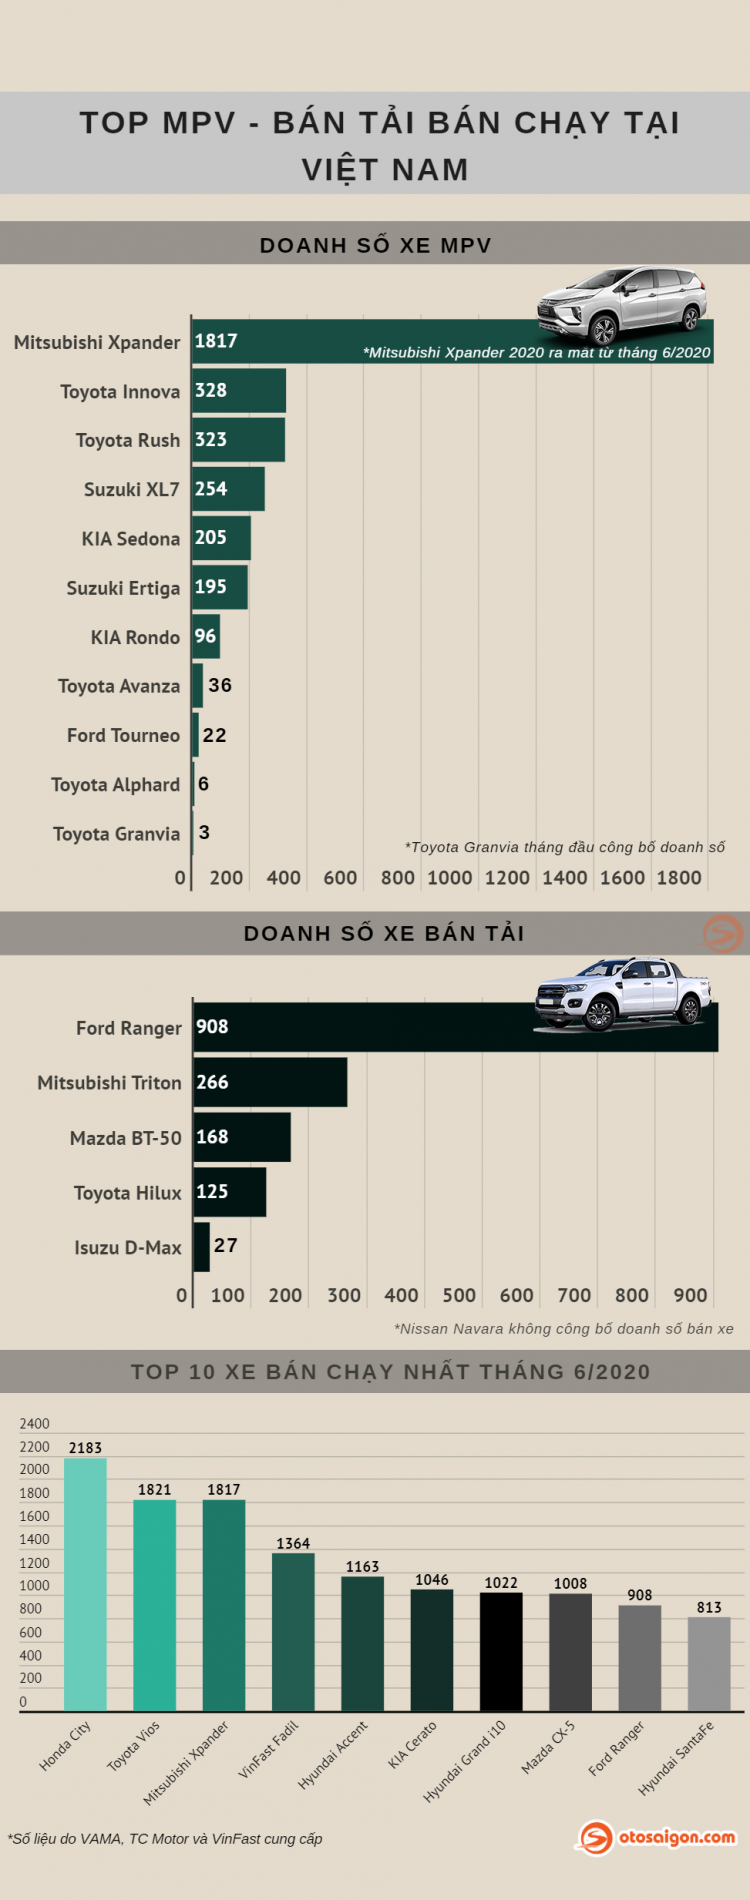 [Infographic] Top MPV-Bán tải bán chạy tại Việt Nam tháng 6/2020: Xpander 2020 vẫn bán chạy nhất